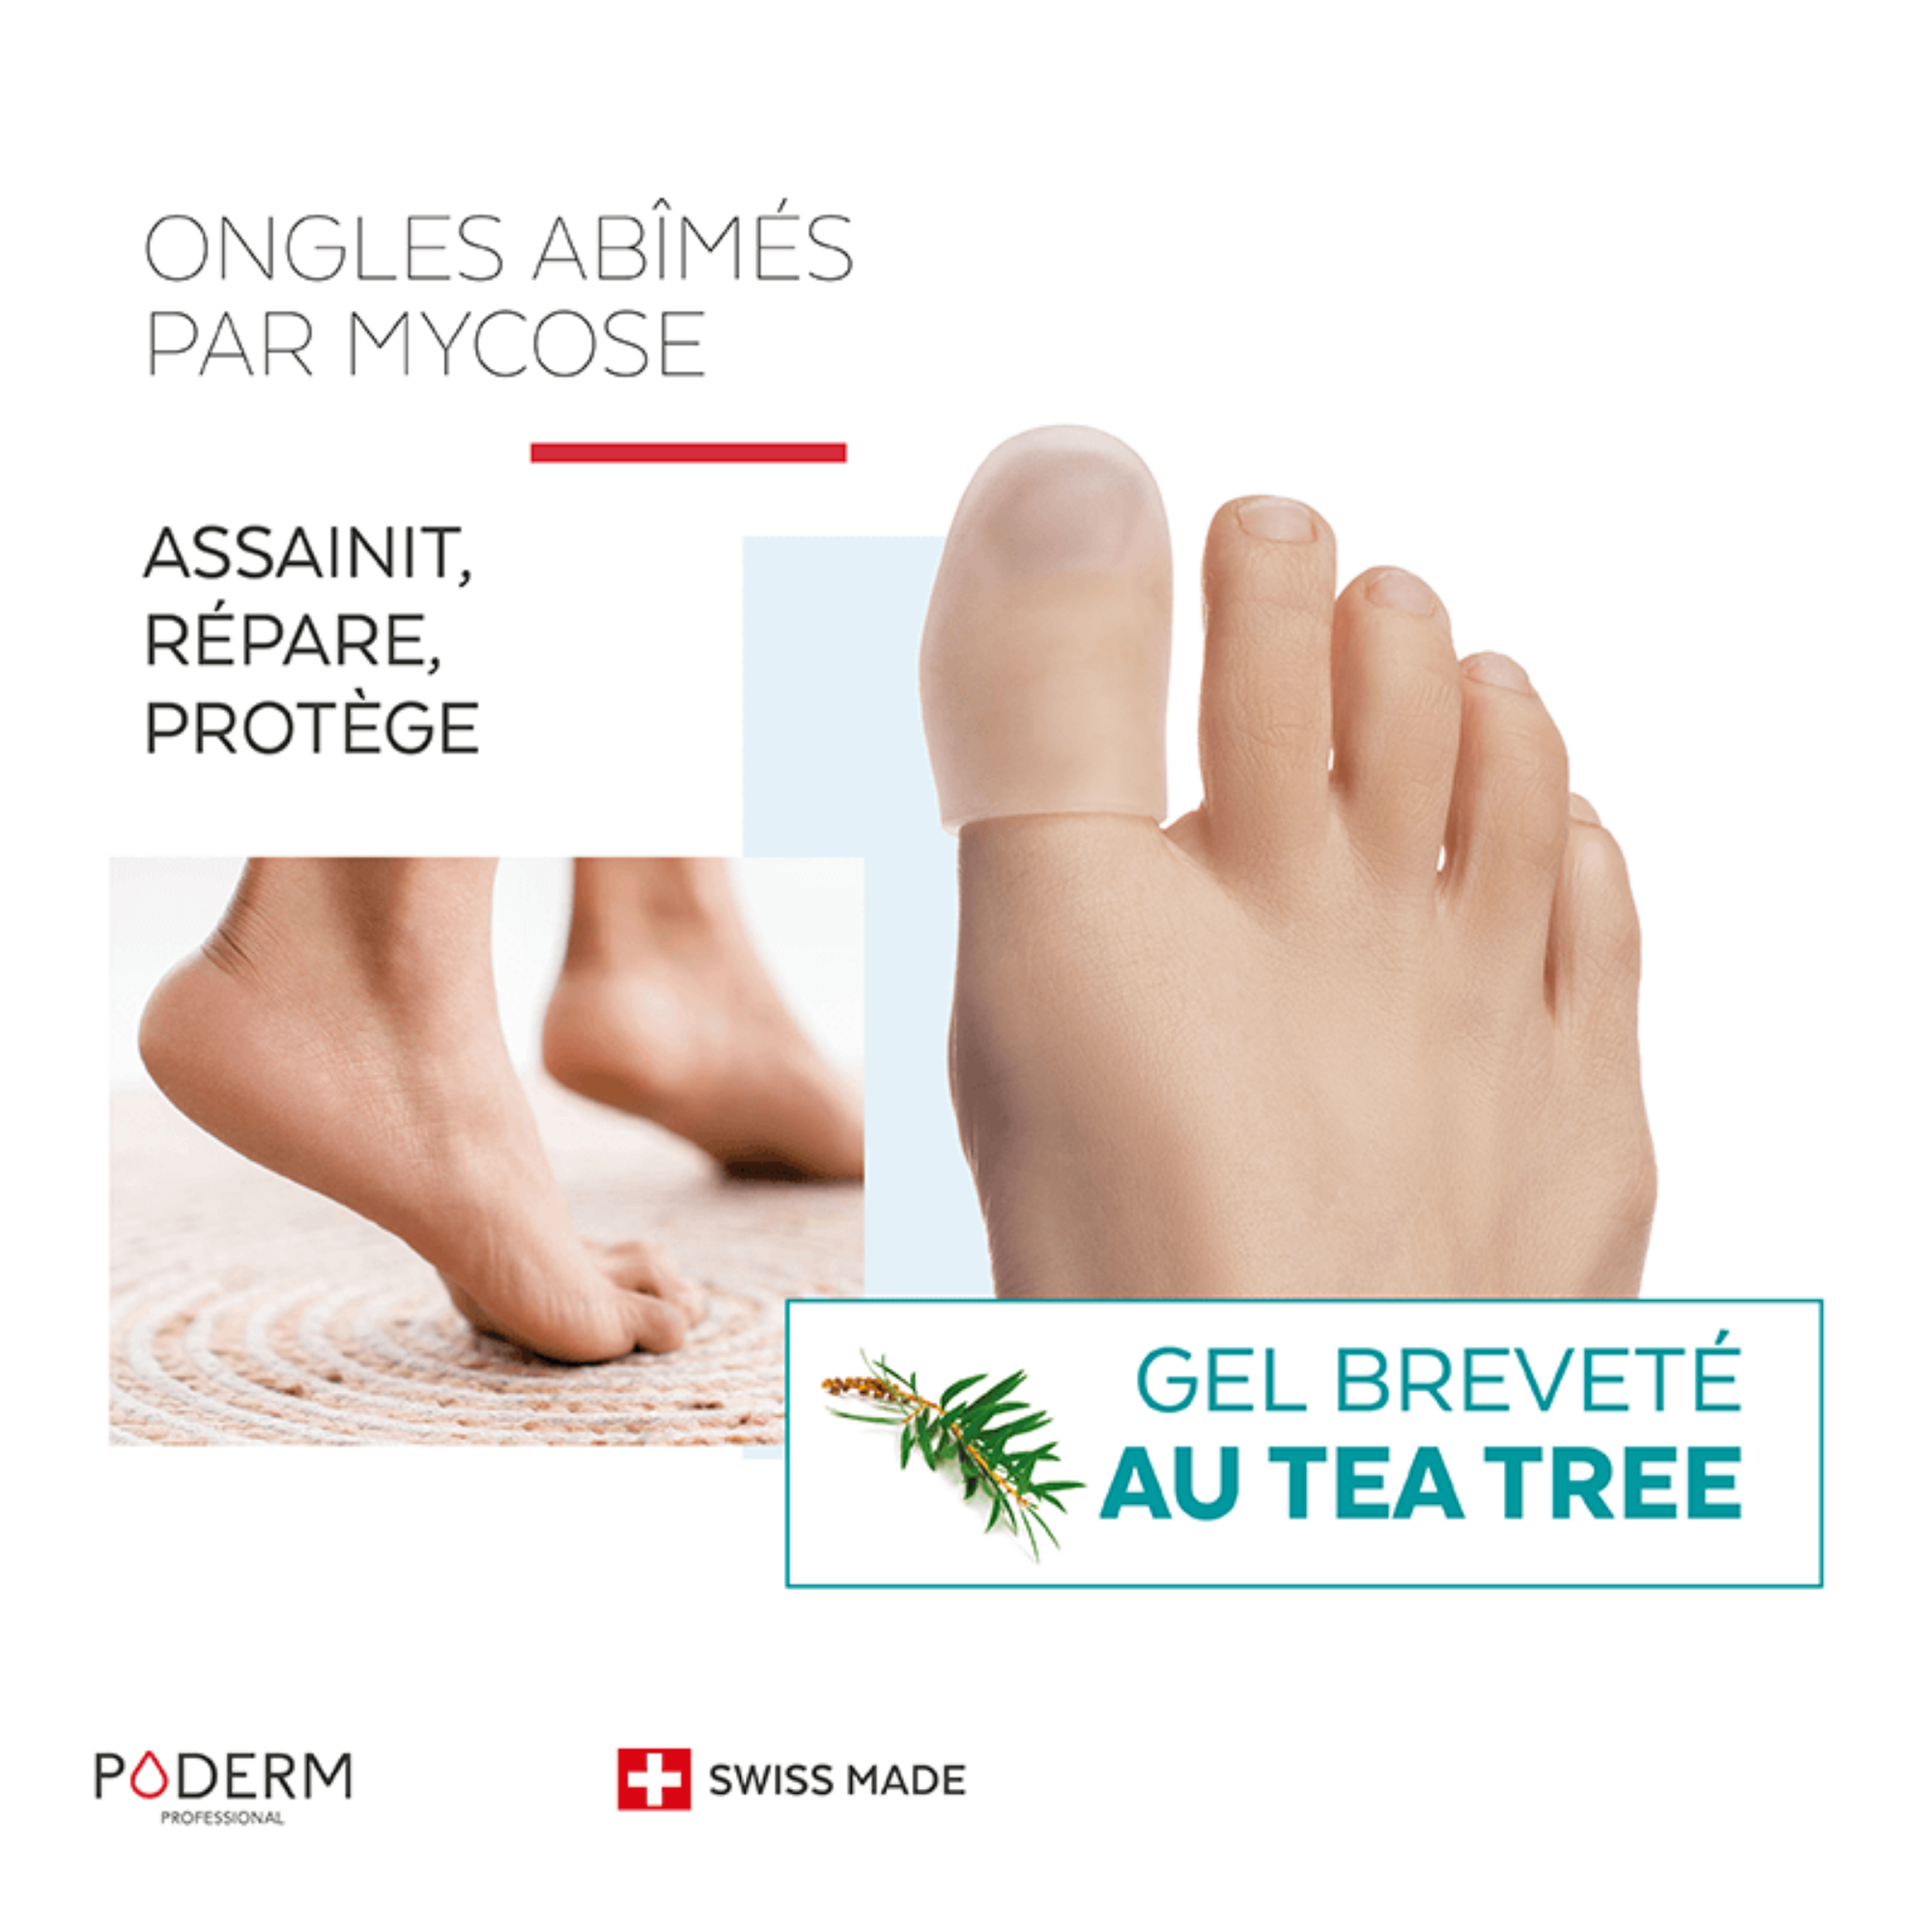 Mycose des ongles - Capuchon d'orteil Gel Tea Tree - Poderm Professional